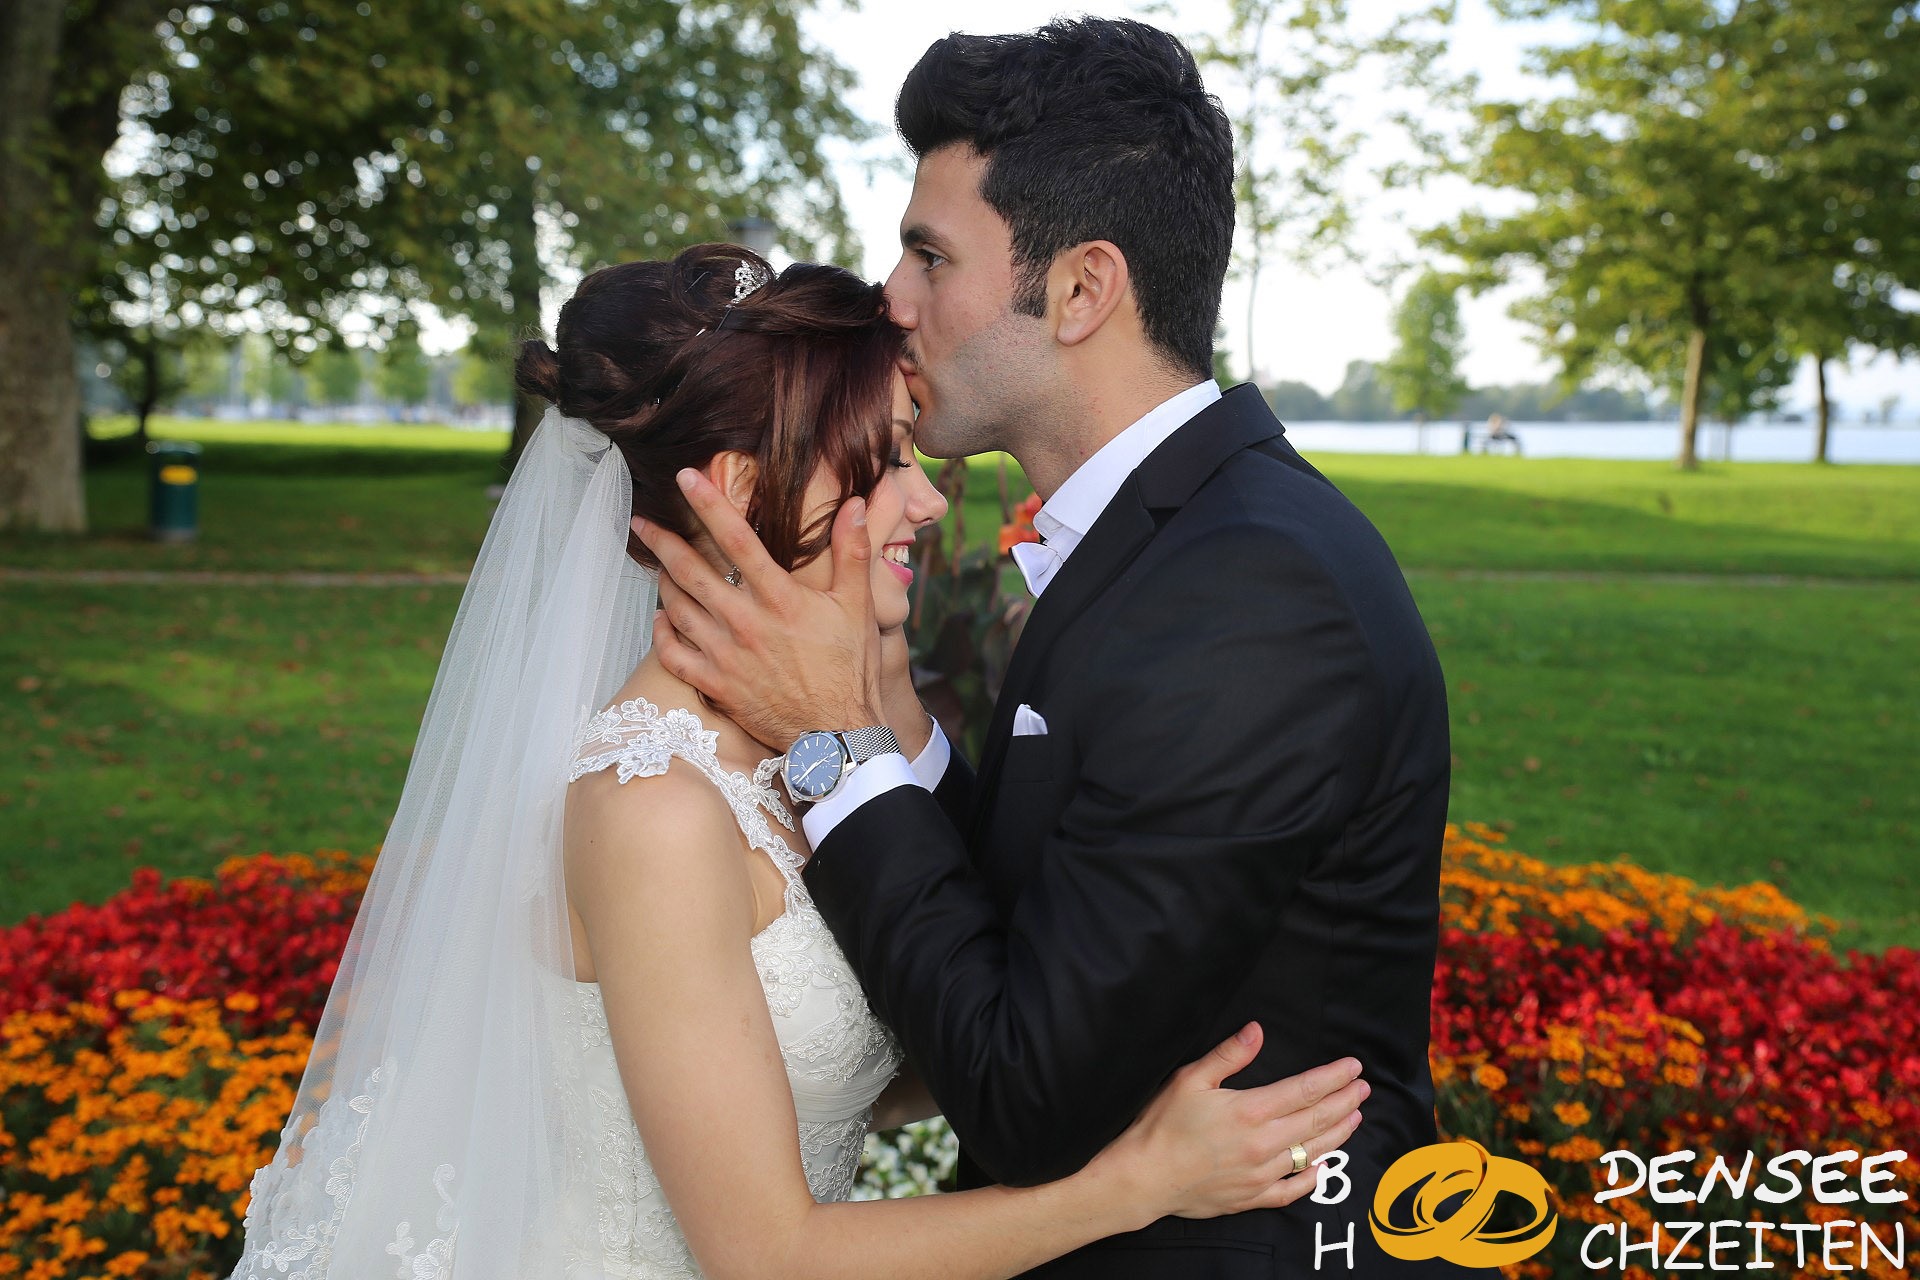 2014 09 06 Hochzeit Hohenems Sercan Muazzez BODENSEE HOCHZEITEN COM IMG 8472